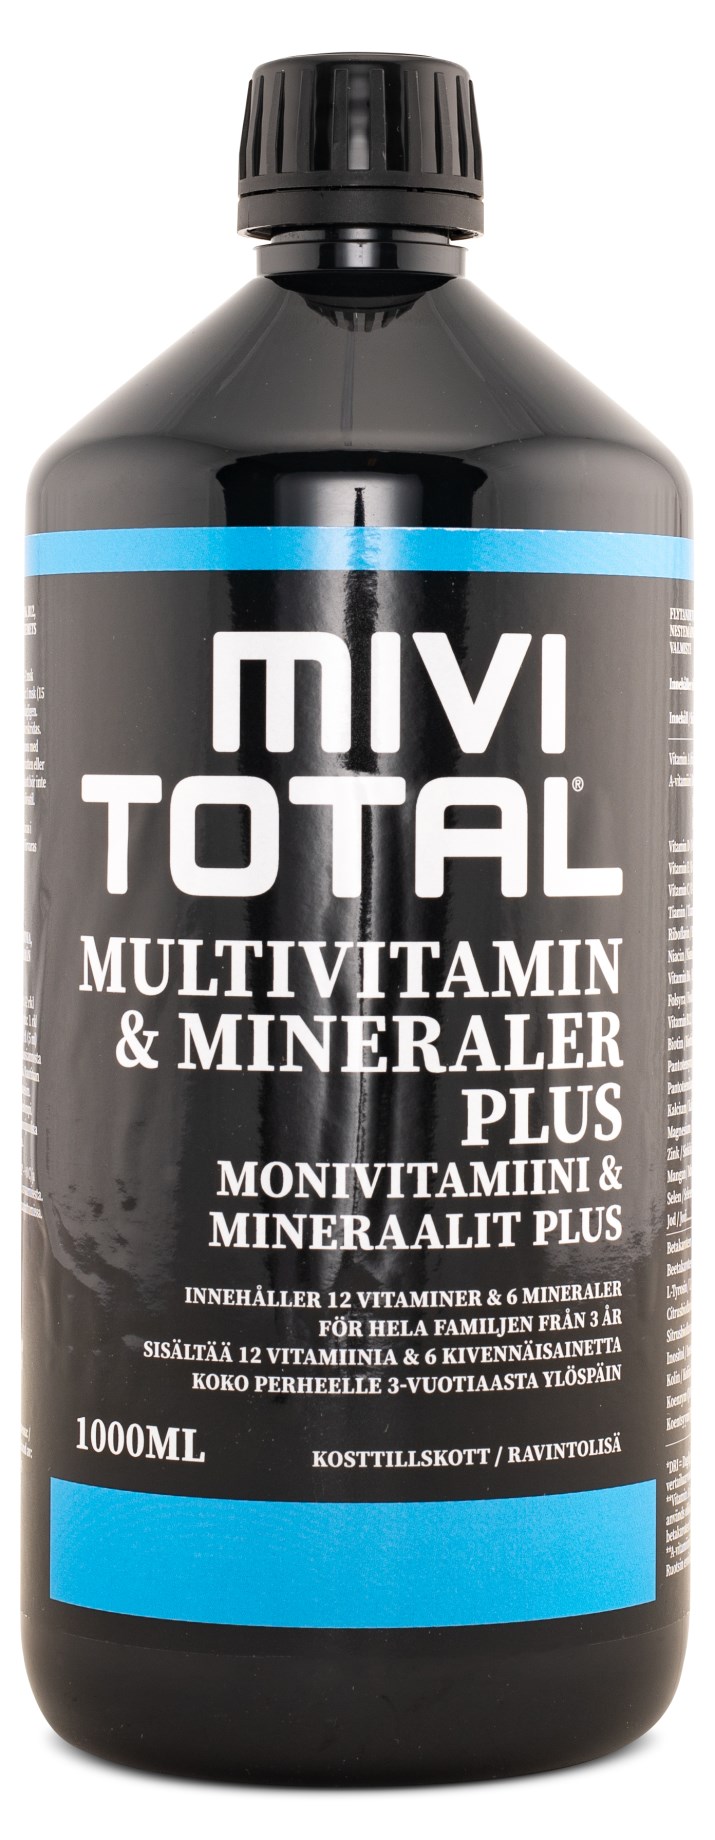 Mivitotal Plus - Bästa flytande multivitamin